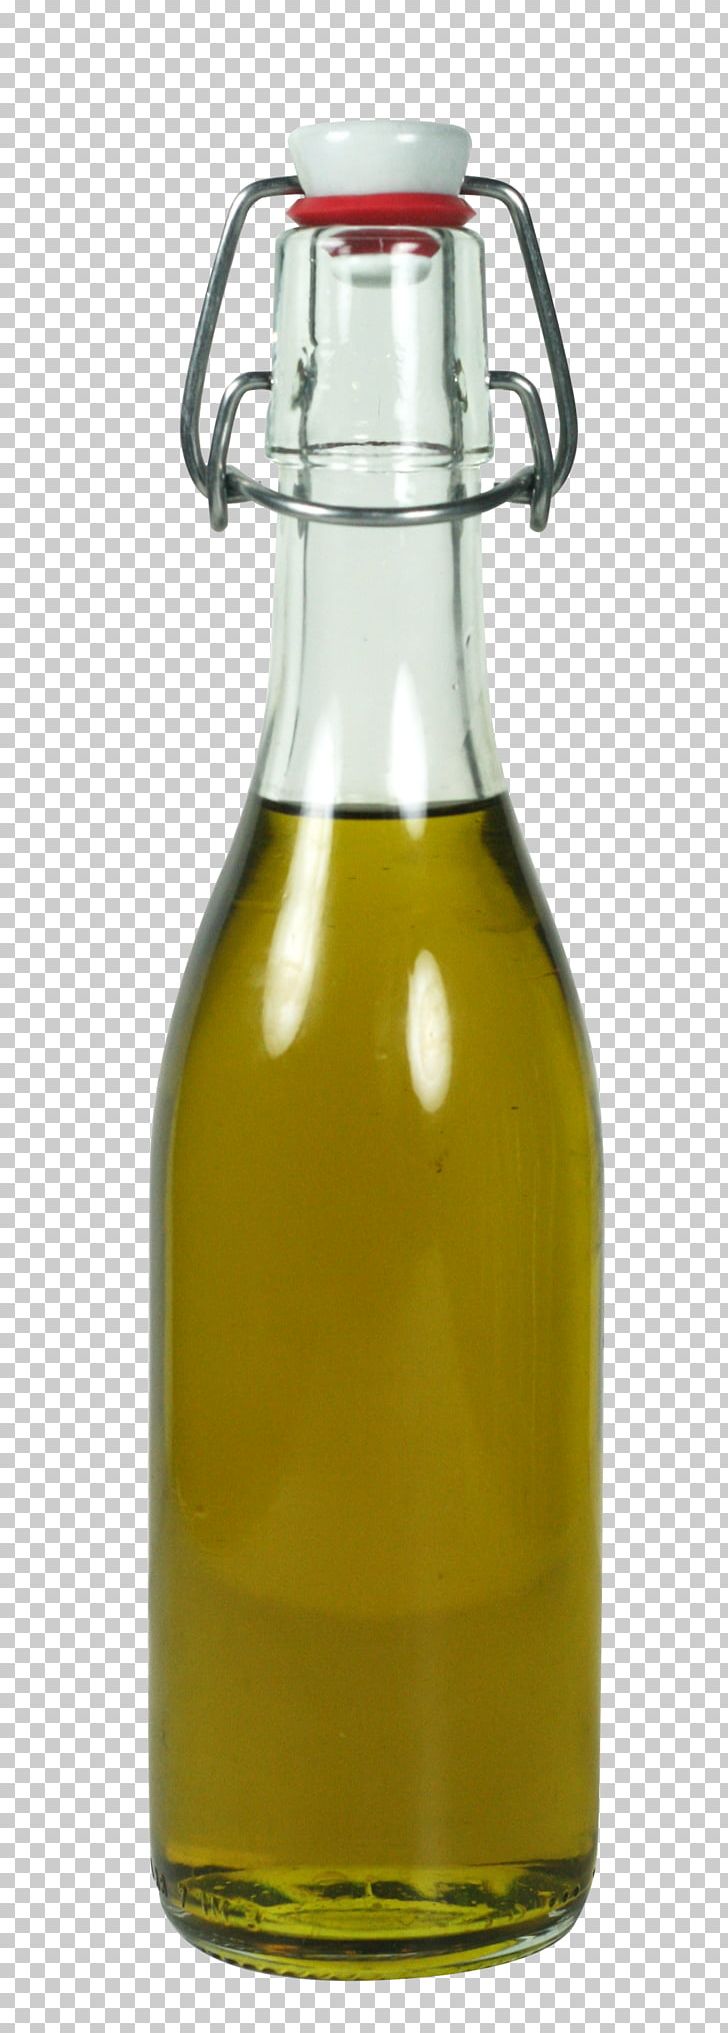 Beer Bottle Vegetable Oil Glass Bottle PNG, Clipart, Barware, Beer, Beer Bottle, Bottle, Cooking Oil Free PNG Download